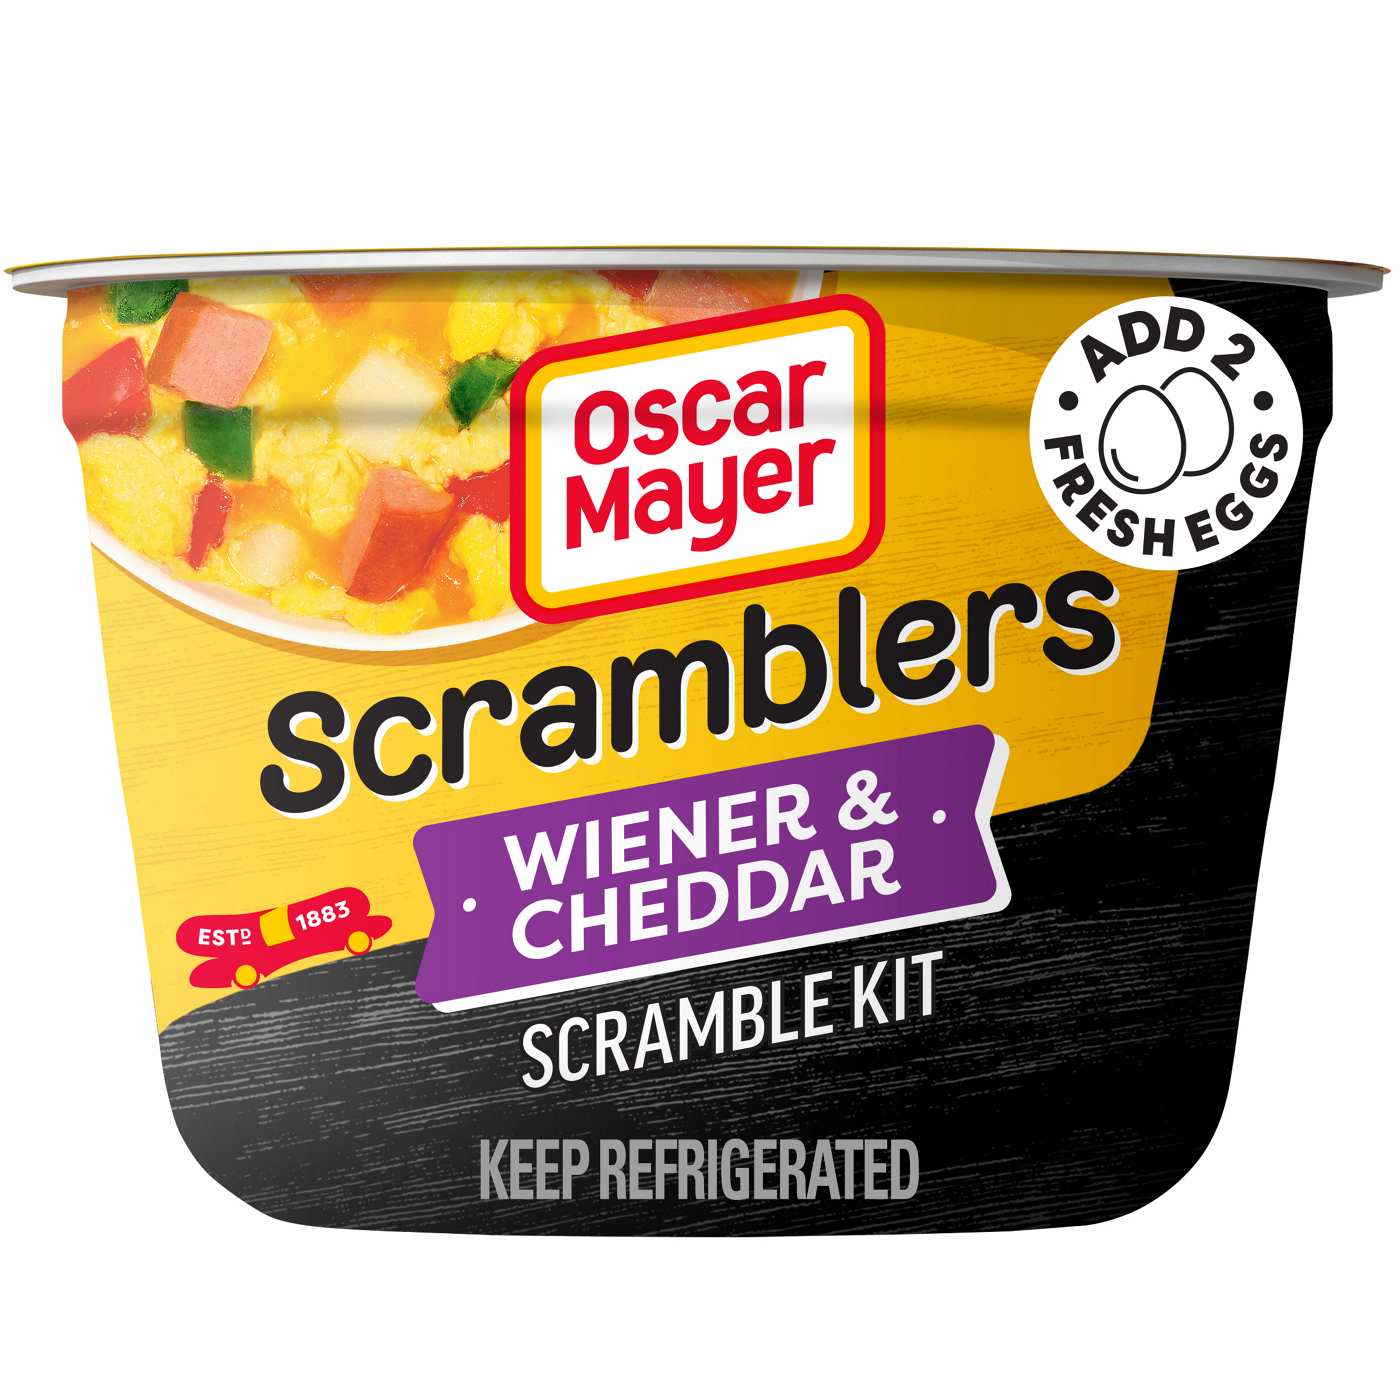 Oscar Mayer Scramblers Breakfast Scramble Kit - Wiener & Cheddar; image 1 of 5